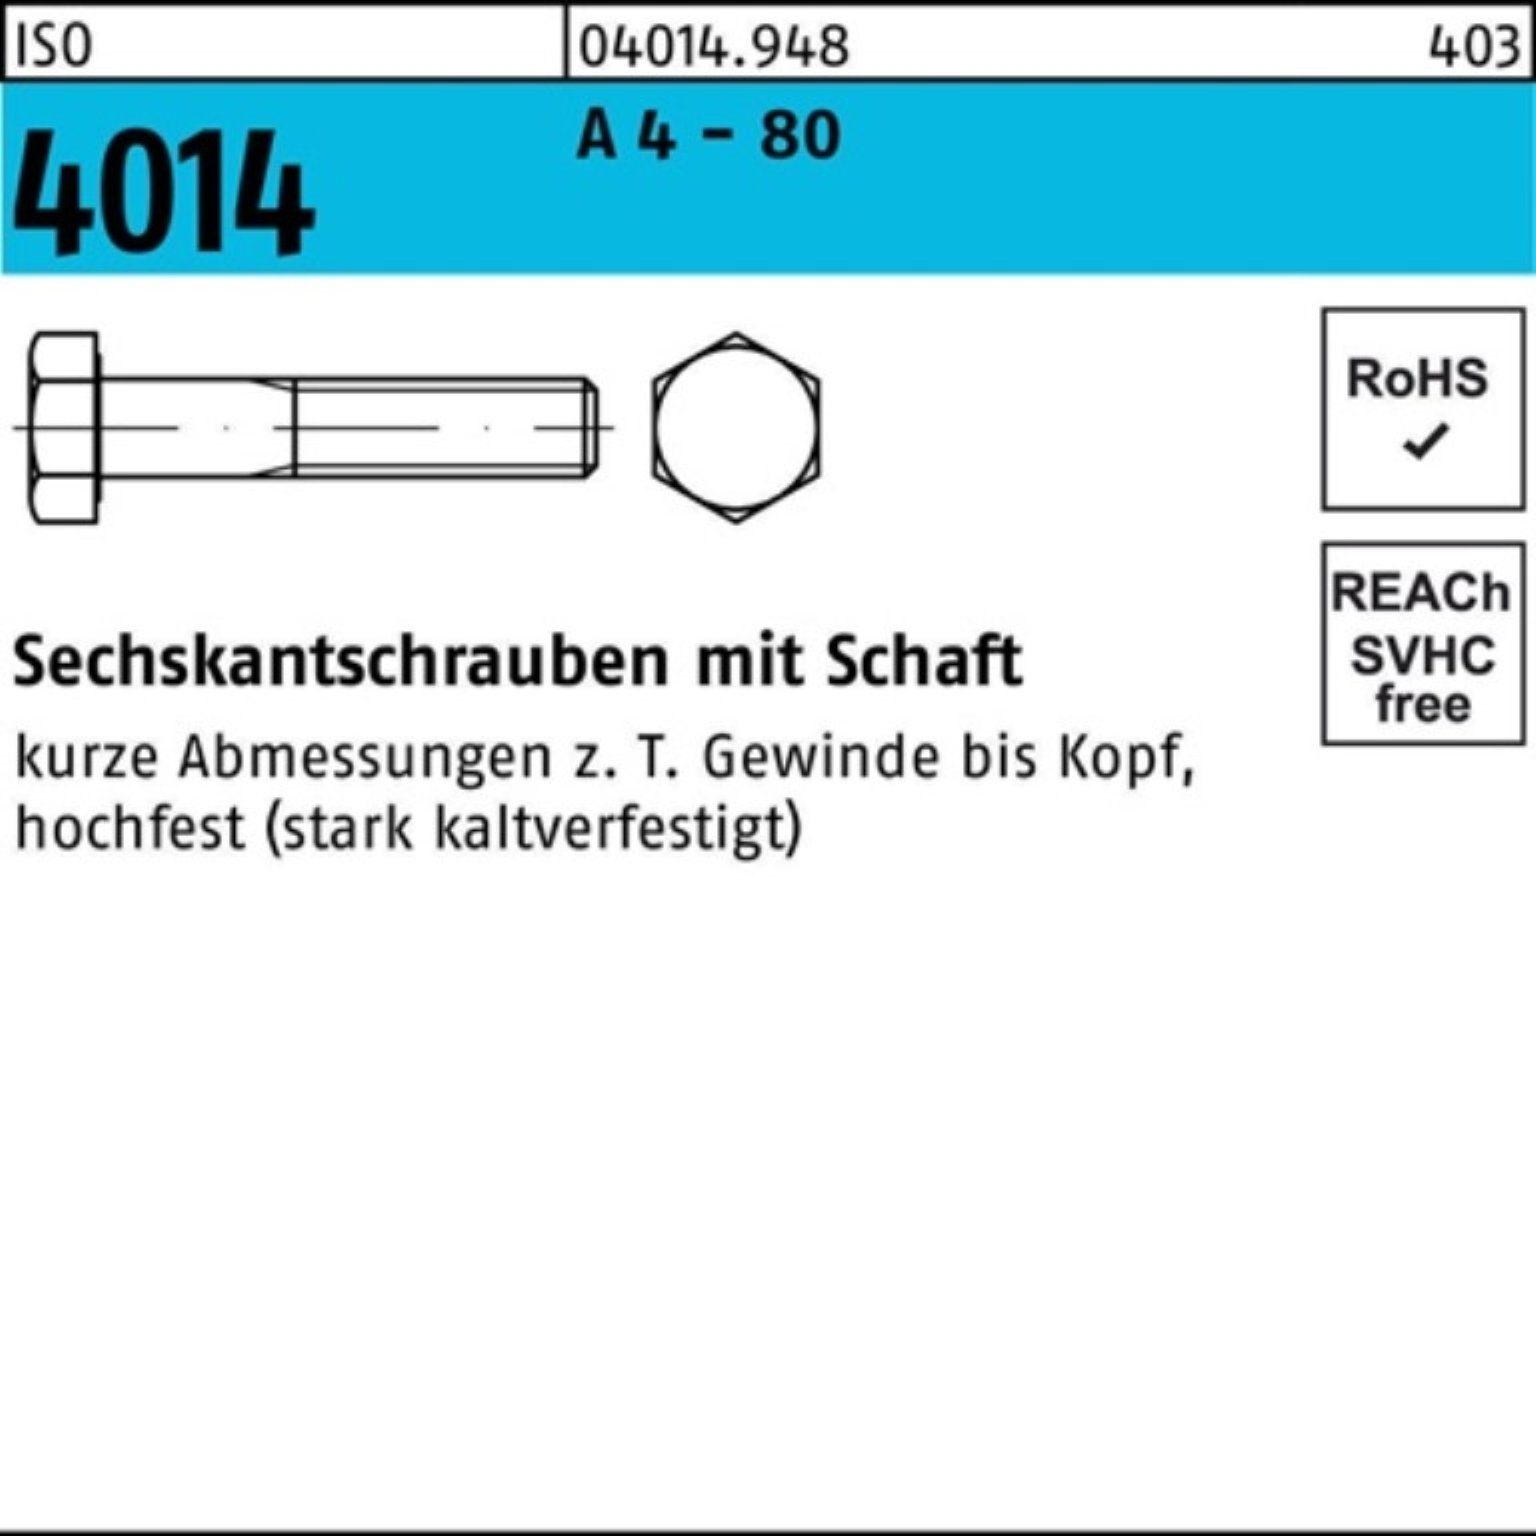 Sechskantschraube 30 M5x 200er Stüc Reyher Pack A 4 80 4014 Schaft Sechskantschraube ISO 200 -